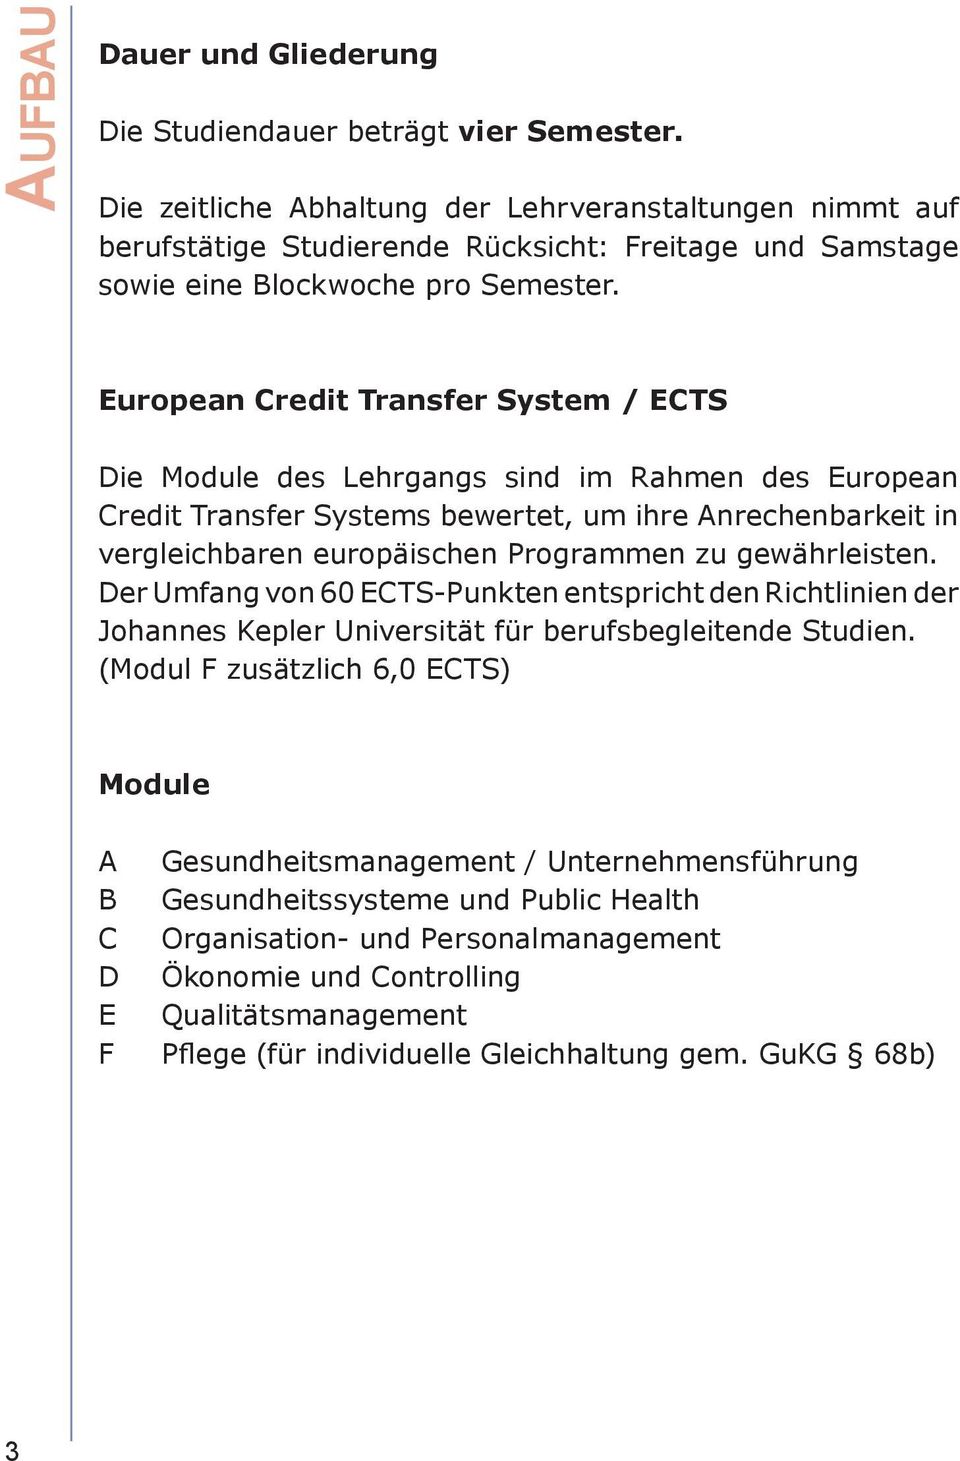 European Credit Transfer System / ECTS Die Module des Lehrgangs sind im Rahmen des European Credit Transfer Systems bewertet, um ihre Anrechenbarkeit in vergleichbaren europäischen Programmen zu